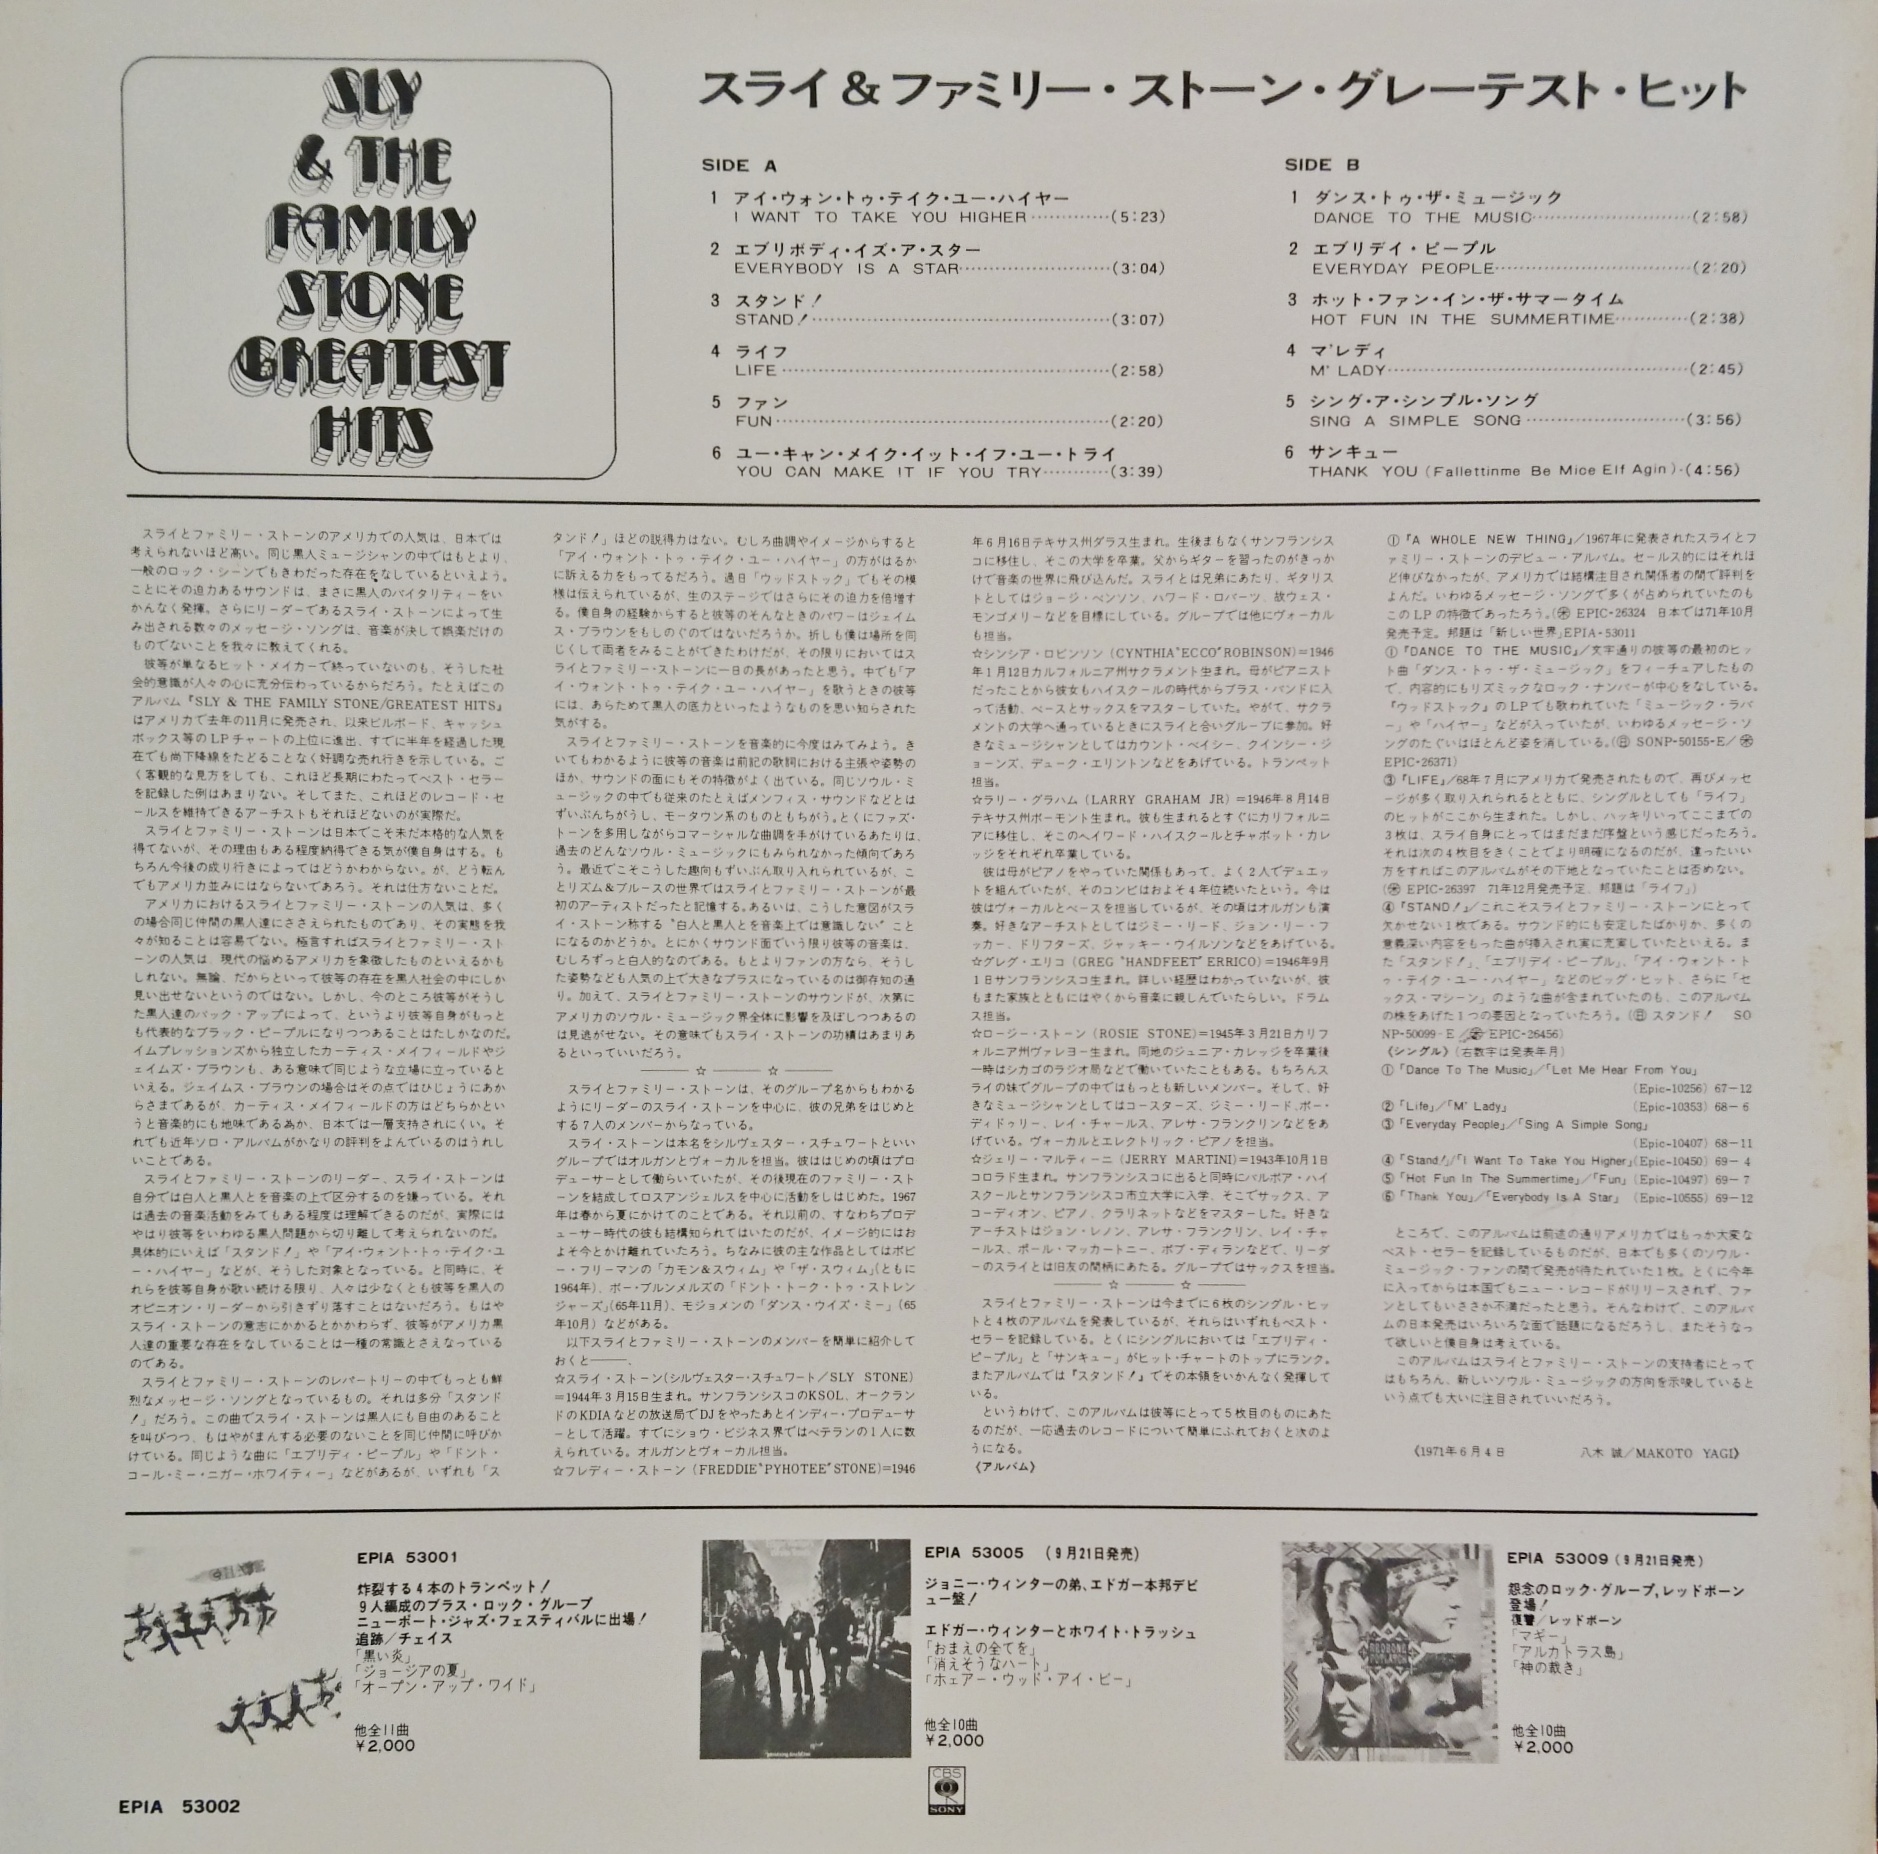 Sly The Family Stone Greatest Hits スライ アンド ザ ファミリーストーン グレイテストヒッツ 中古レコード通販 買取のアカル レコーズ